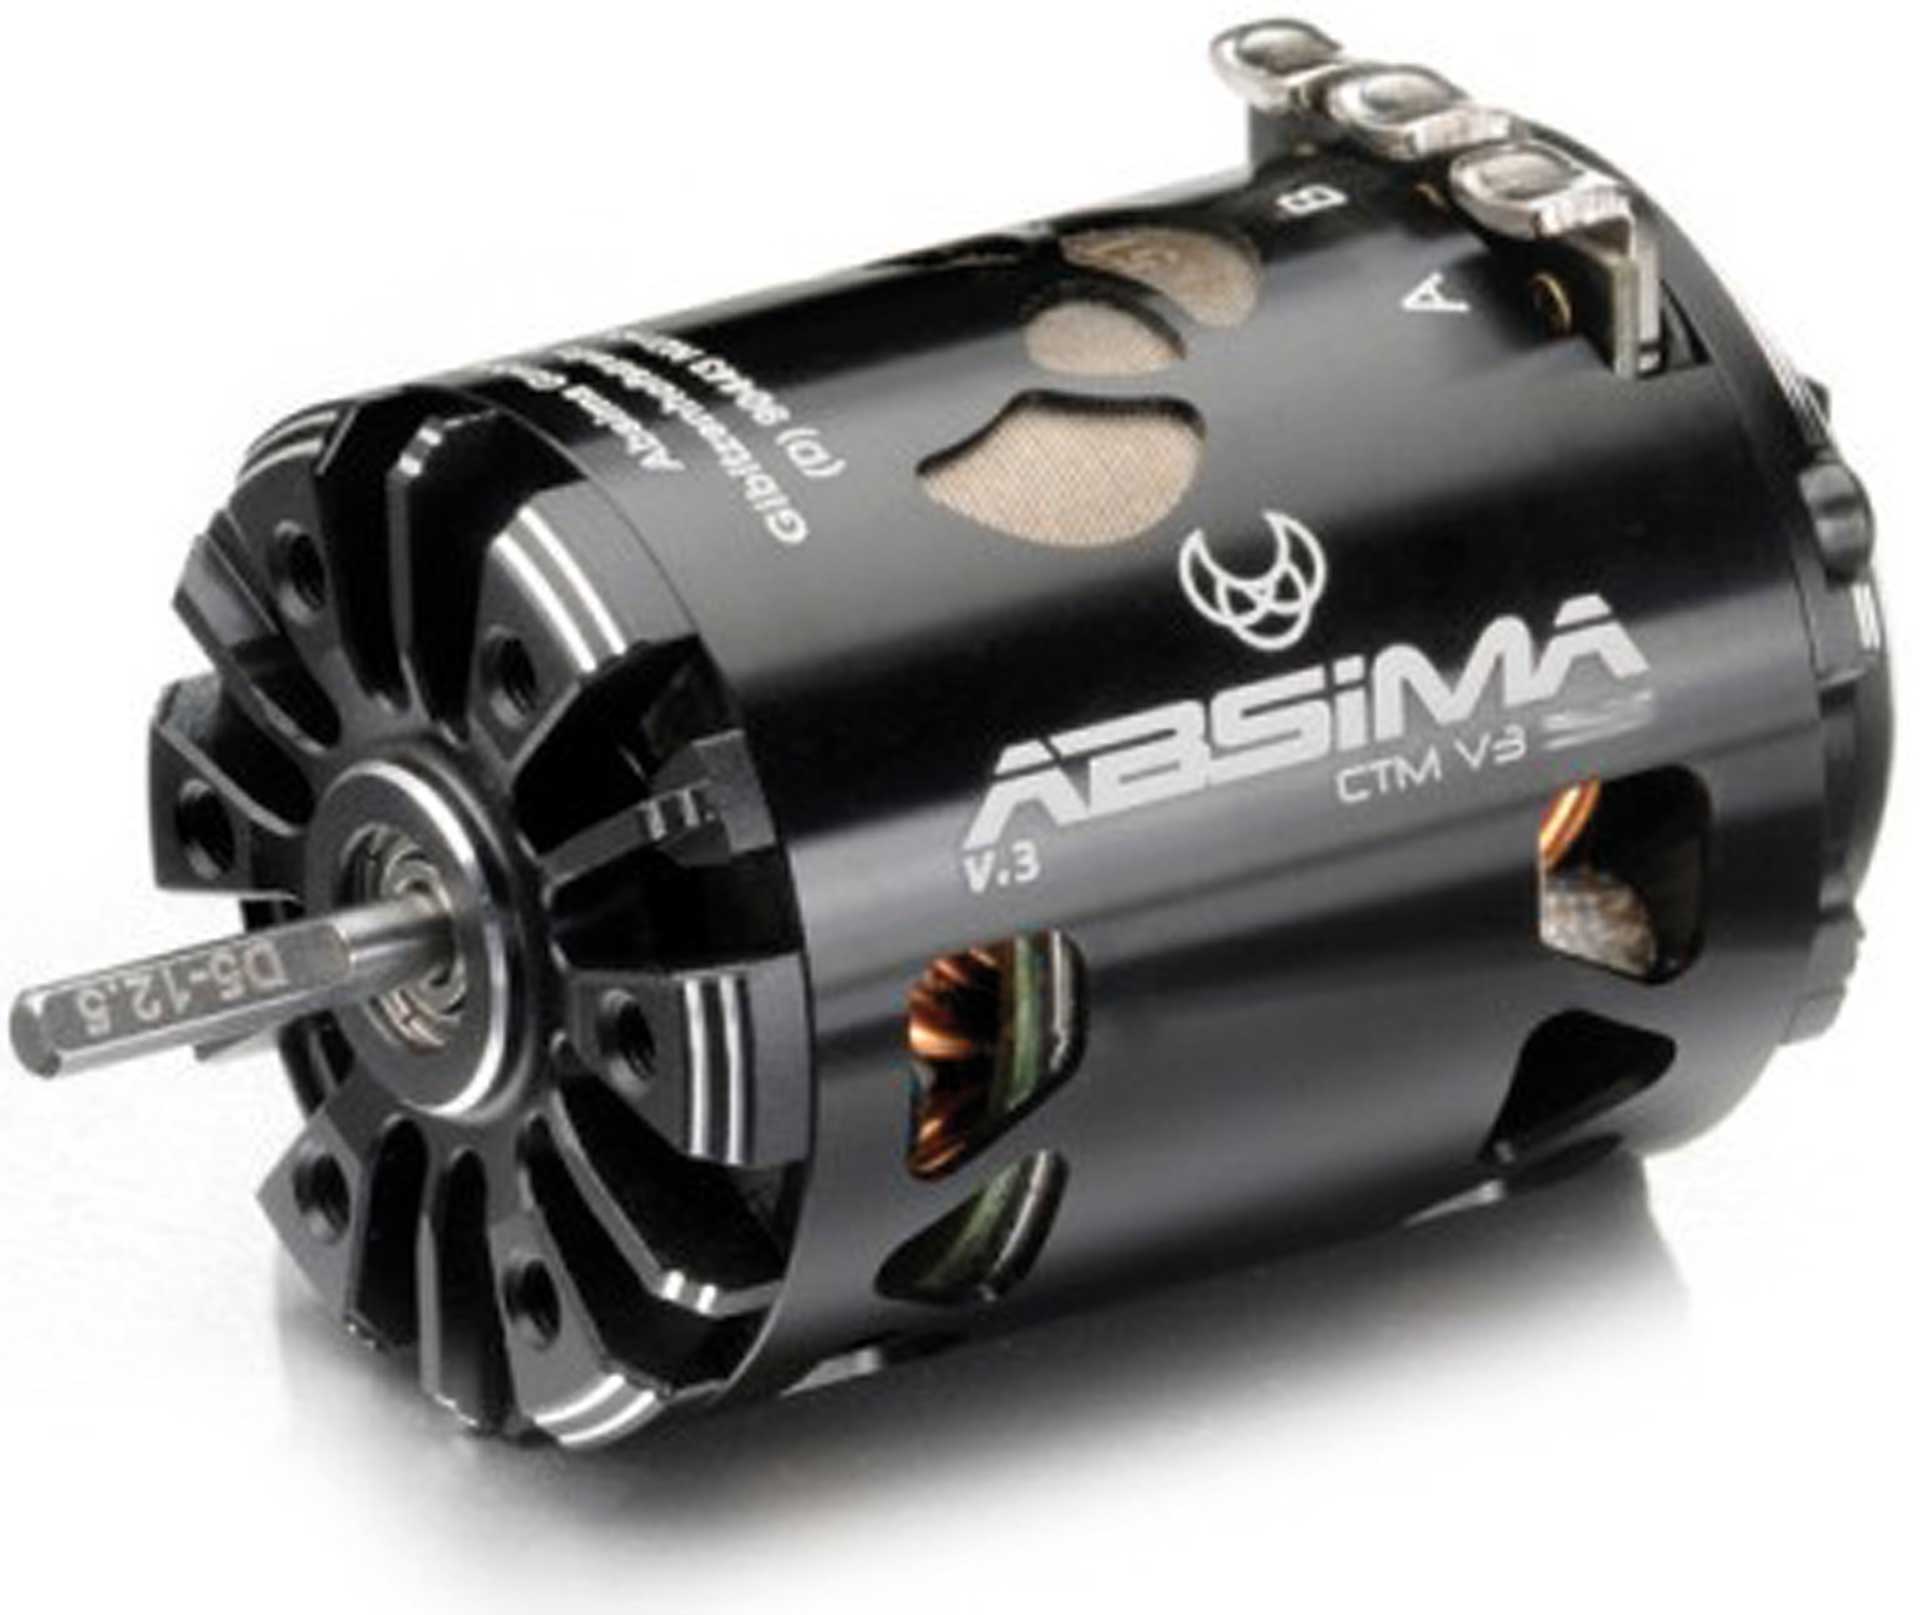 ABSIMA Brushless Motor 1:10 "Revenge CTM V3" 4,0T